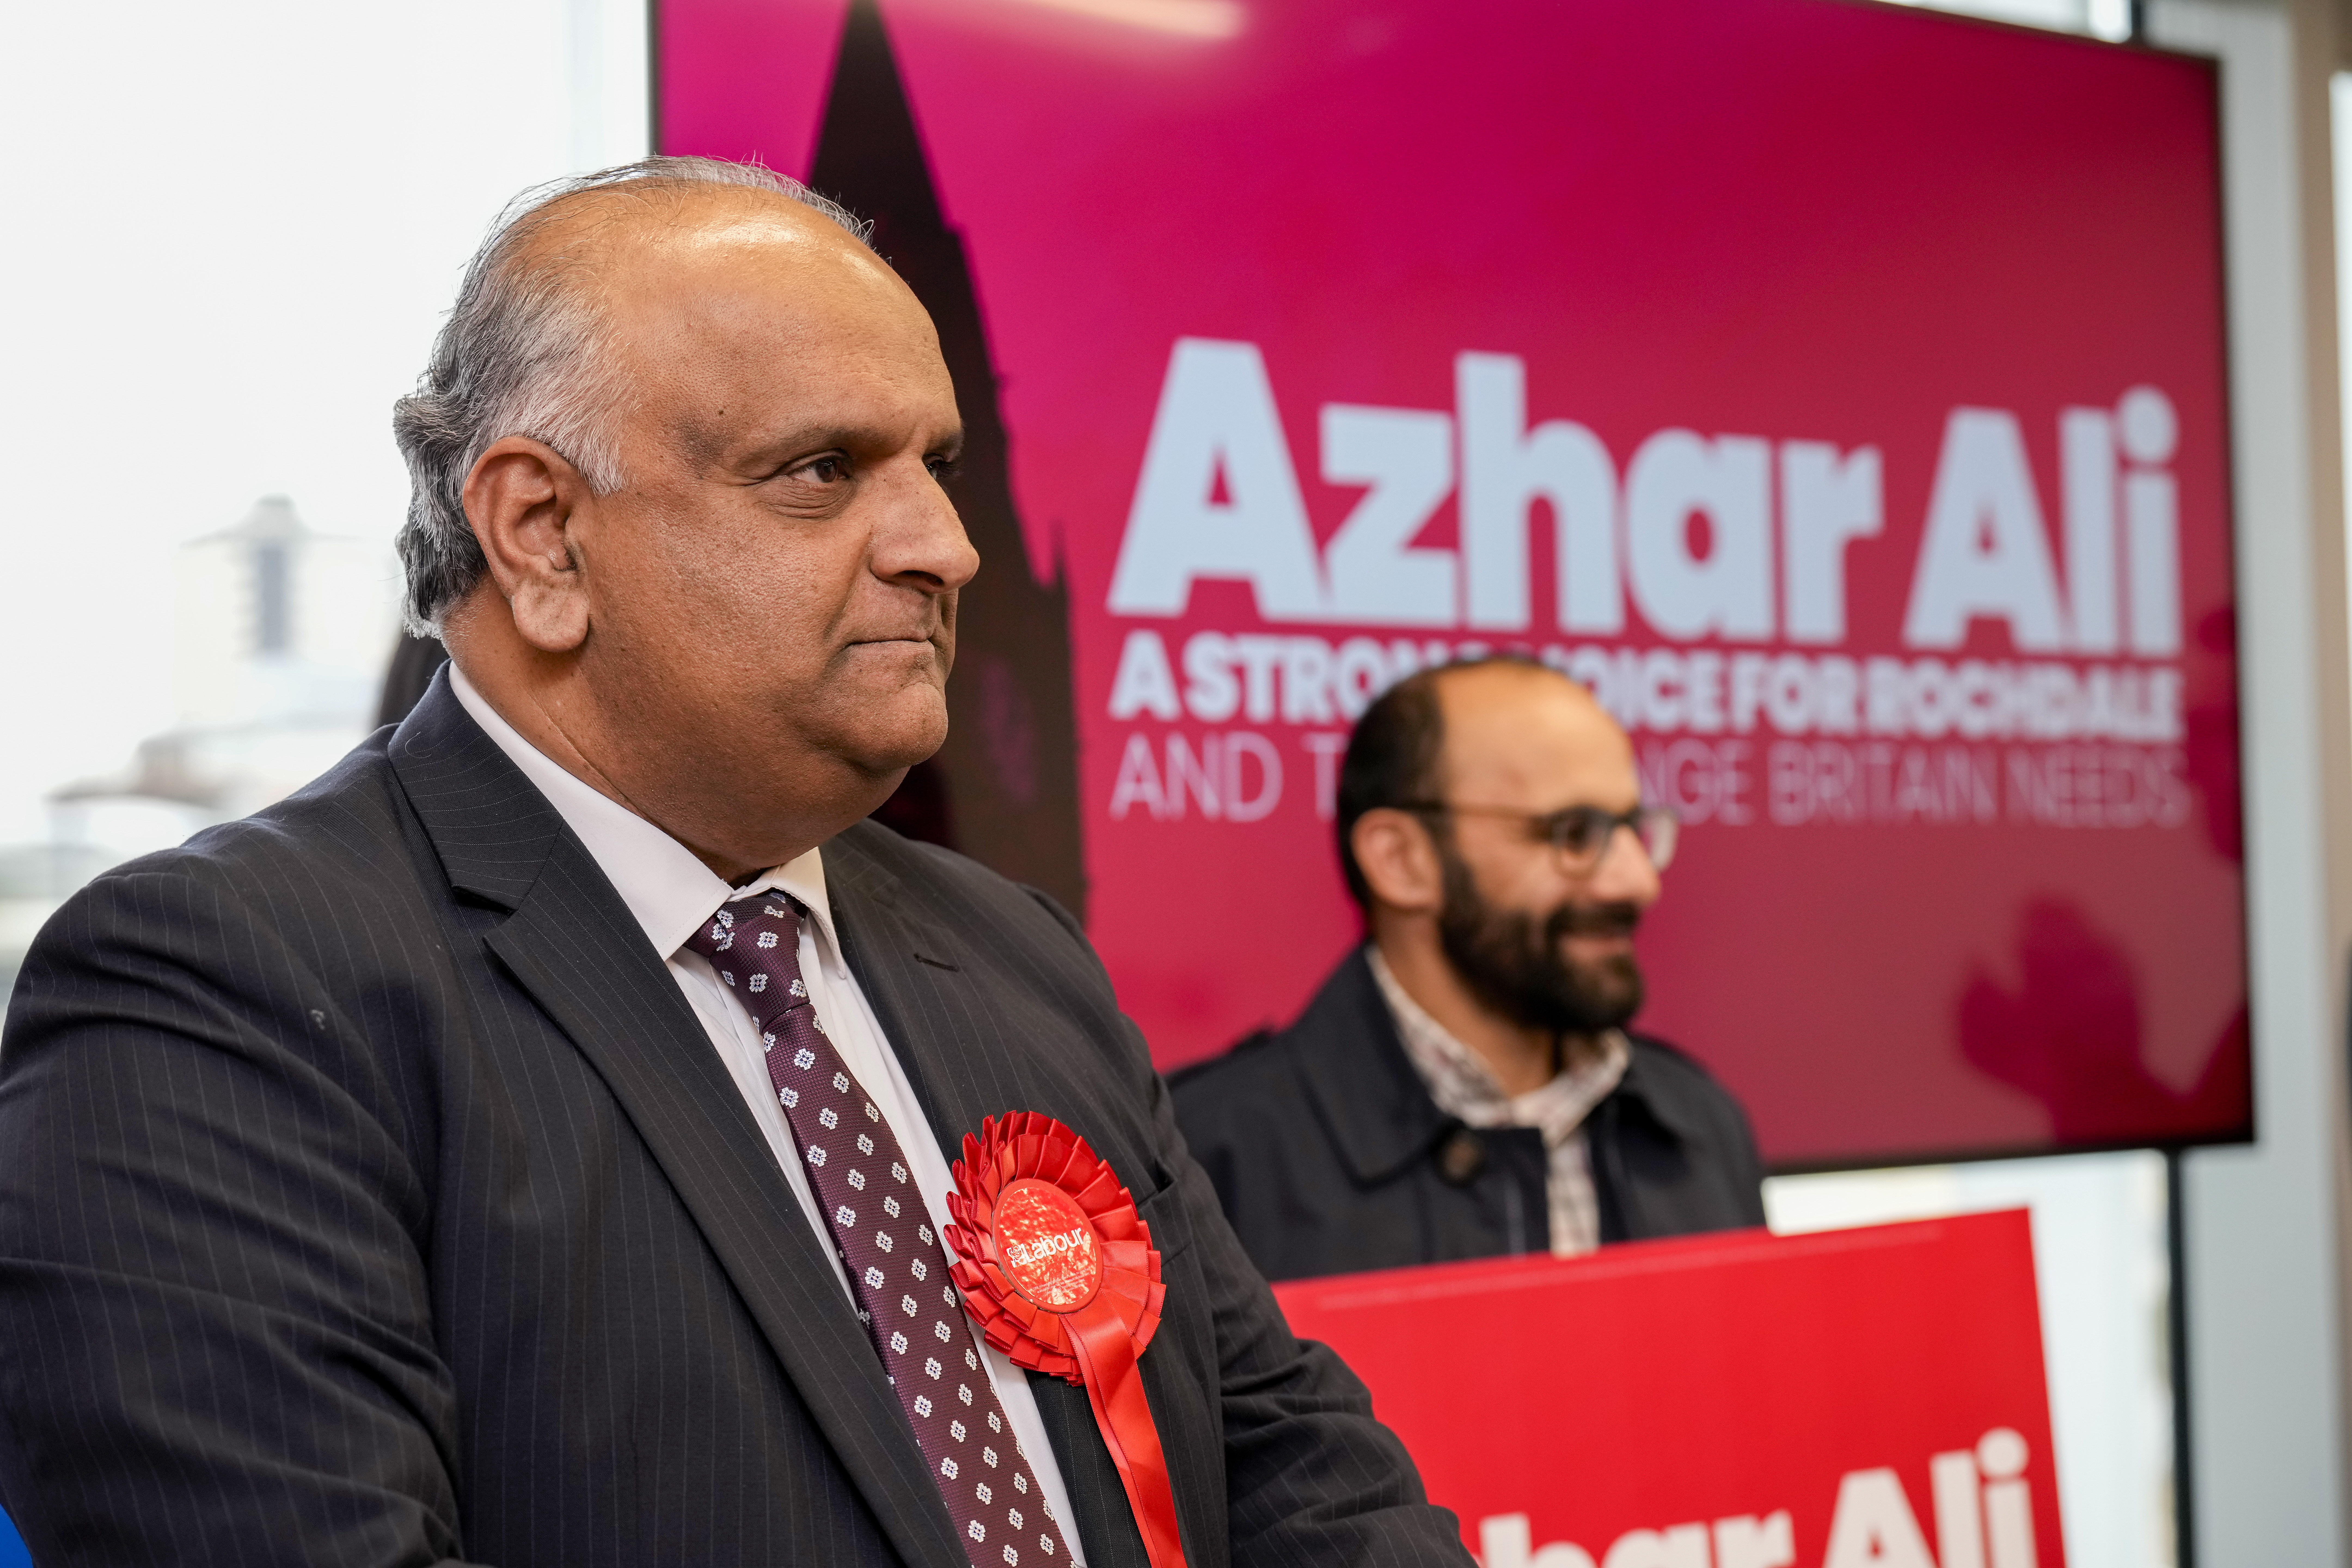 Dies geschah, nachdem die Partei den Rochdale-Kandidaten Azhar Ali suspendiert hatte, der bösartige Verschwörungen gegen Israel und die Hamas verbreitete